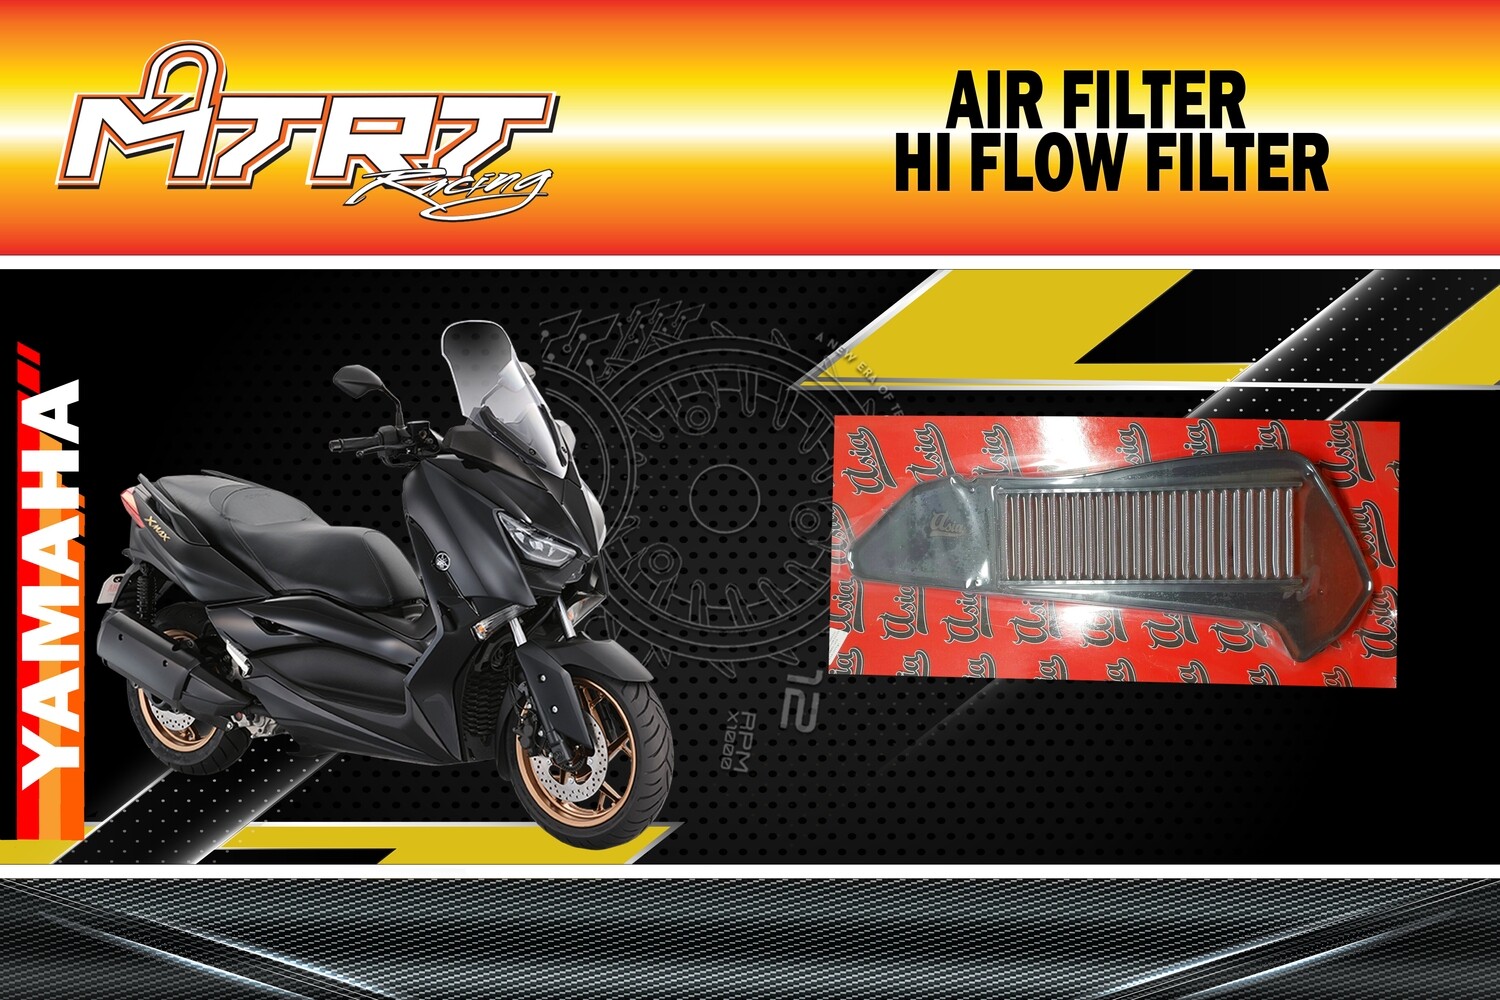 AIR FILTER XMAX300 ASIA Hi-flow filter